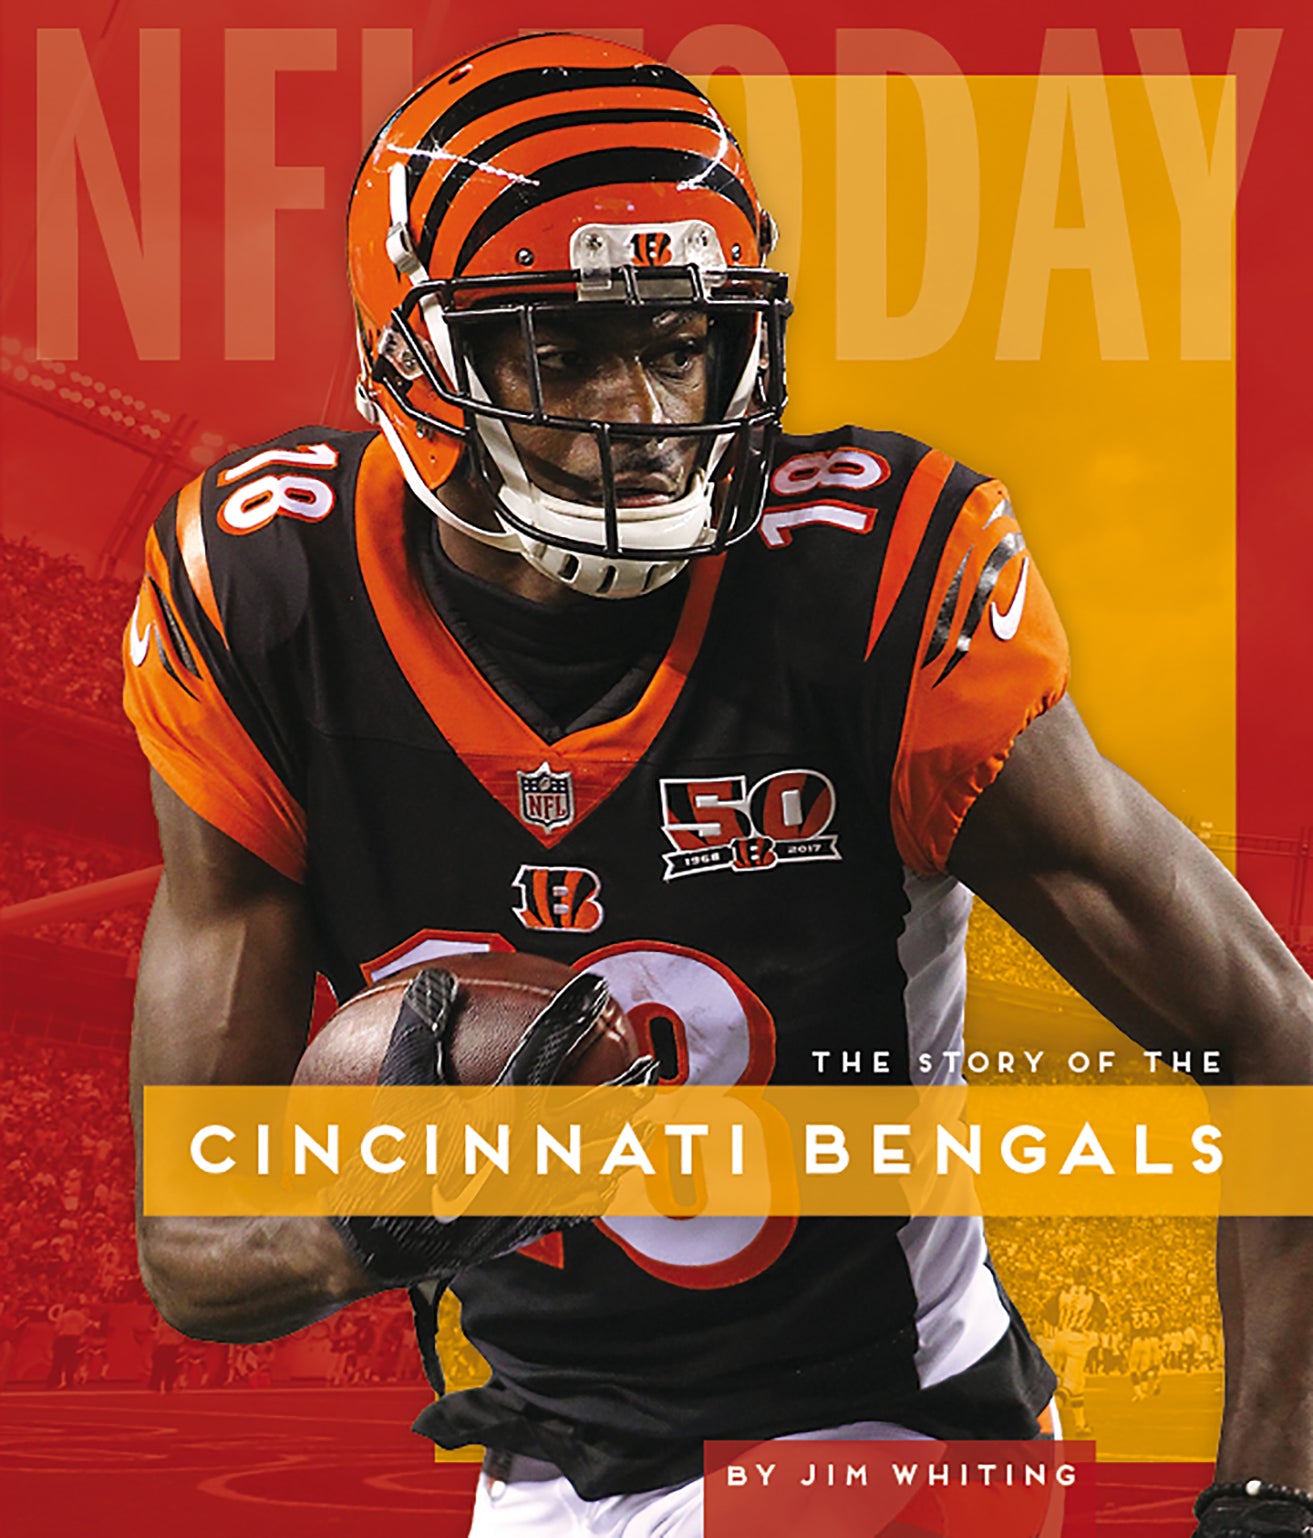 NFL Today: Cincinnati Bengals – The Creative Company Shop